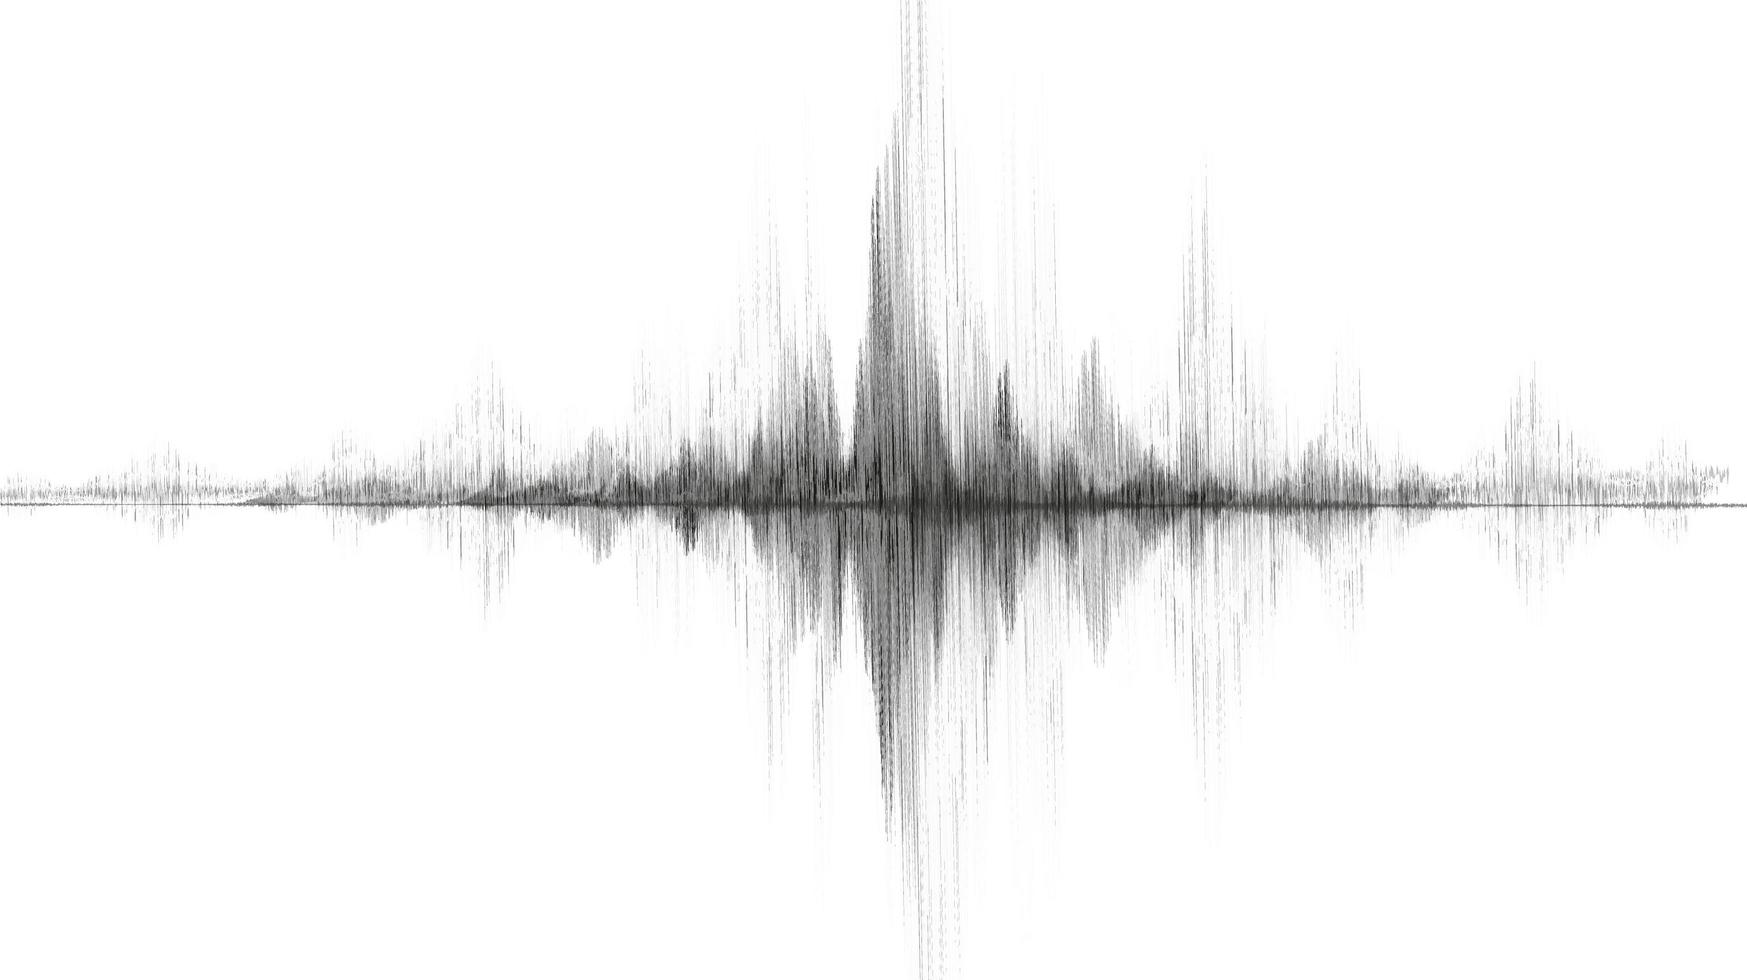 vague de tremblement de terre noire avec vibration de cercle sur fond de papier blanc, concept de diagramme d'onde audio, conception pour l'éducation et la science, illustration vectorielle. vecteur